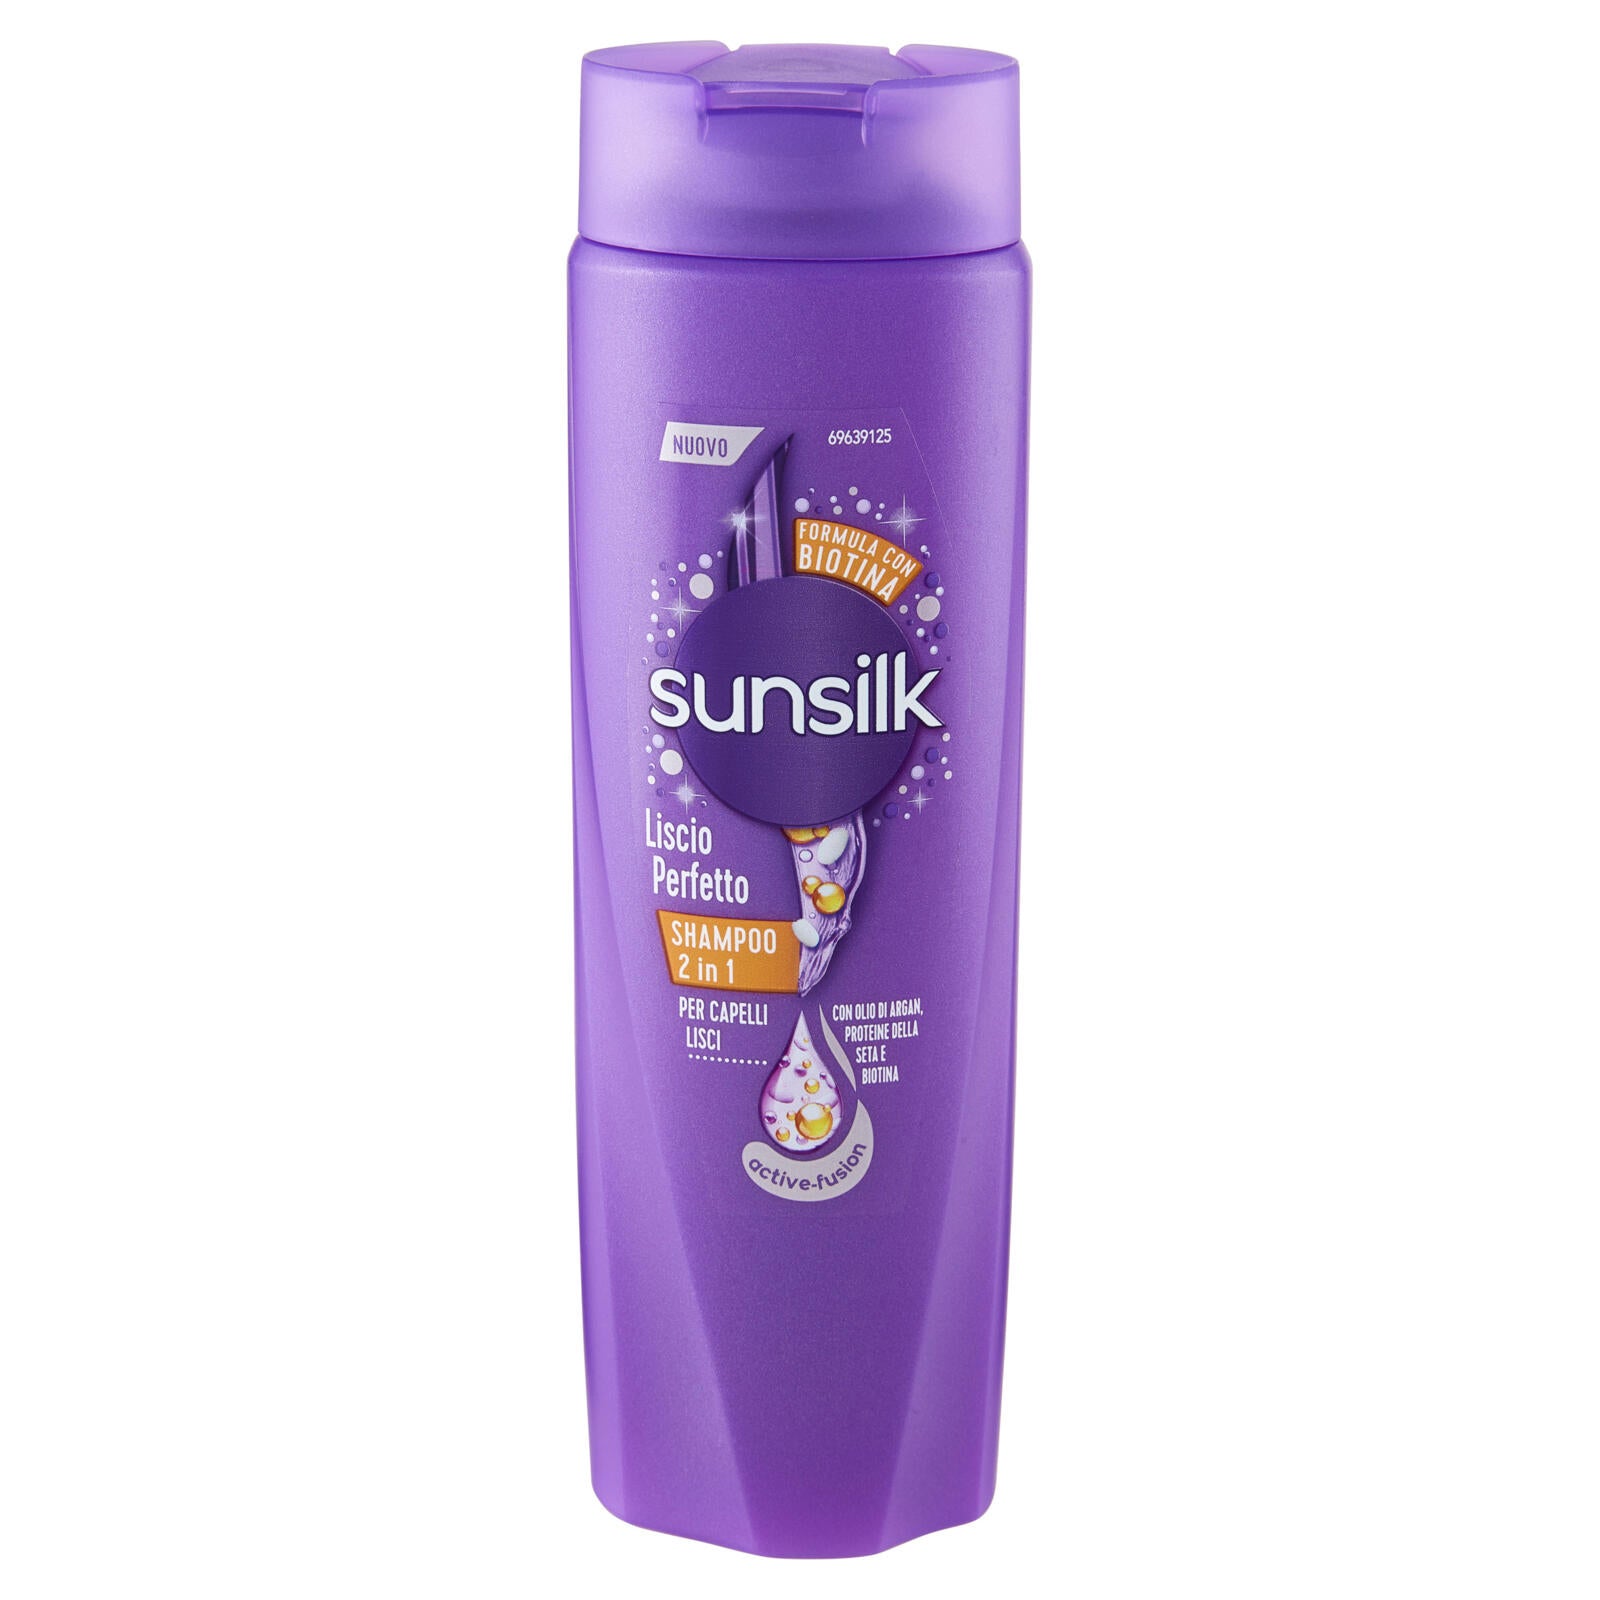 sunsilk Liscio Perfetto Shampoo 2in1 per Capelli Lisci 250 mL